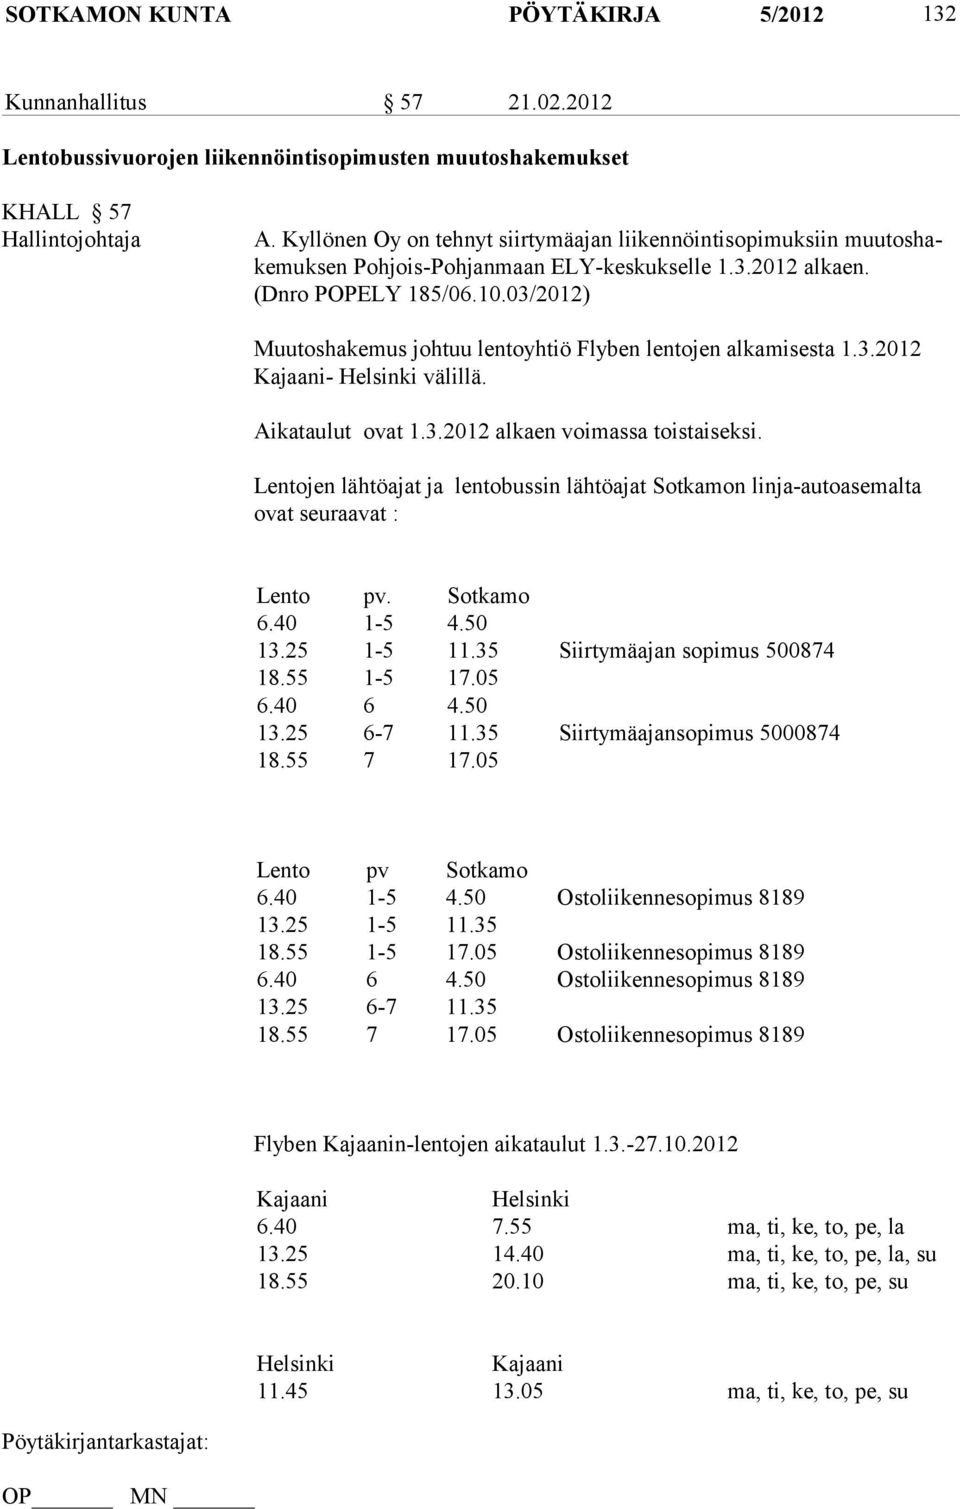 03/2012) Muutoshakemus johtuu lentoyhtiö Flyben lentojen alkamisesta 1.3.2012 Kajaani- Helsinki välillä. Aikataulut ovat 1.3.2012 alkaen voimassa toistaiseksi.